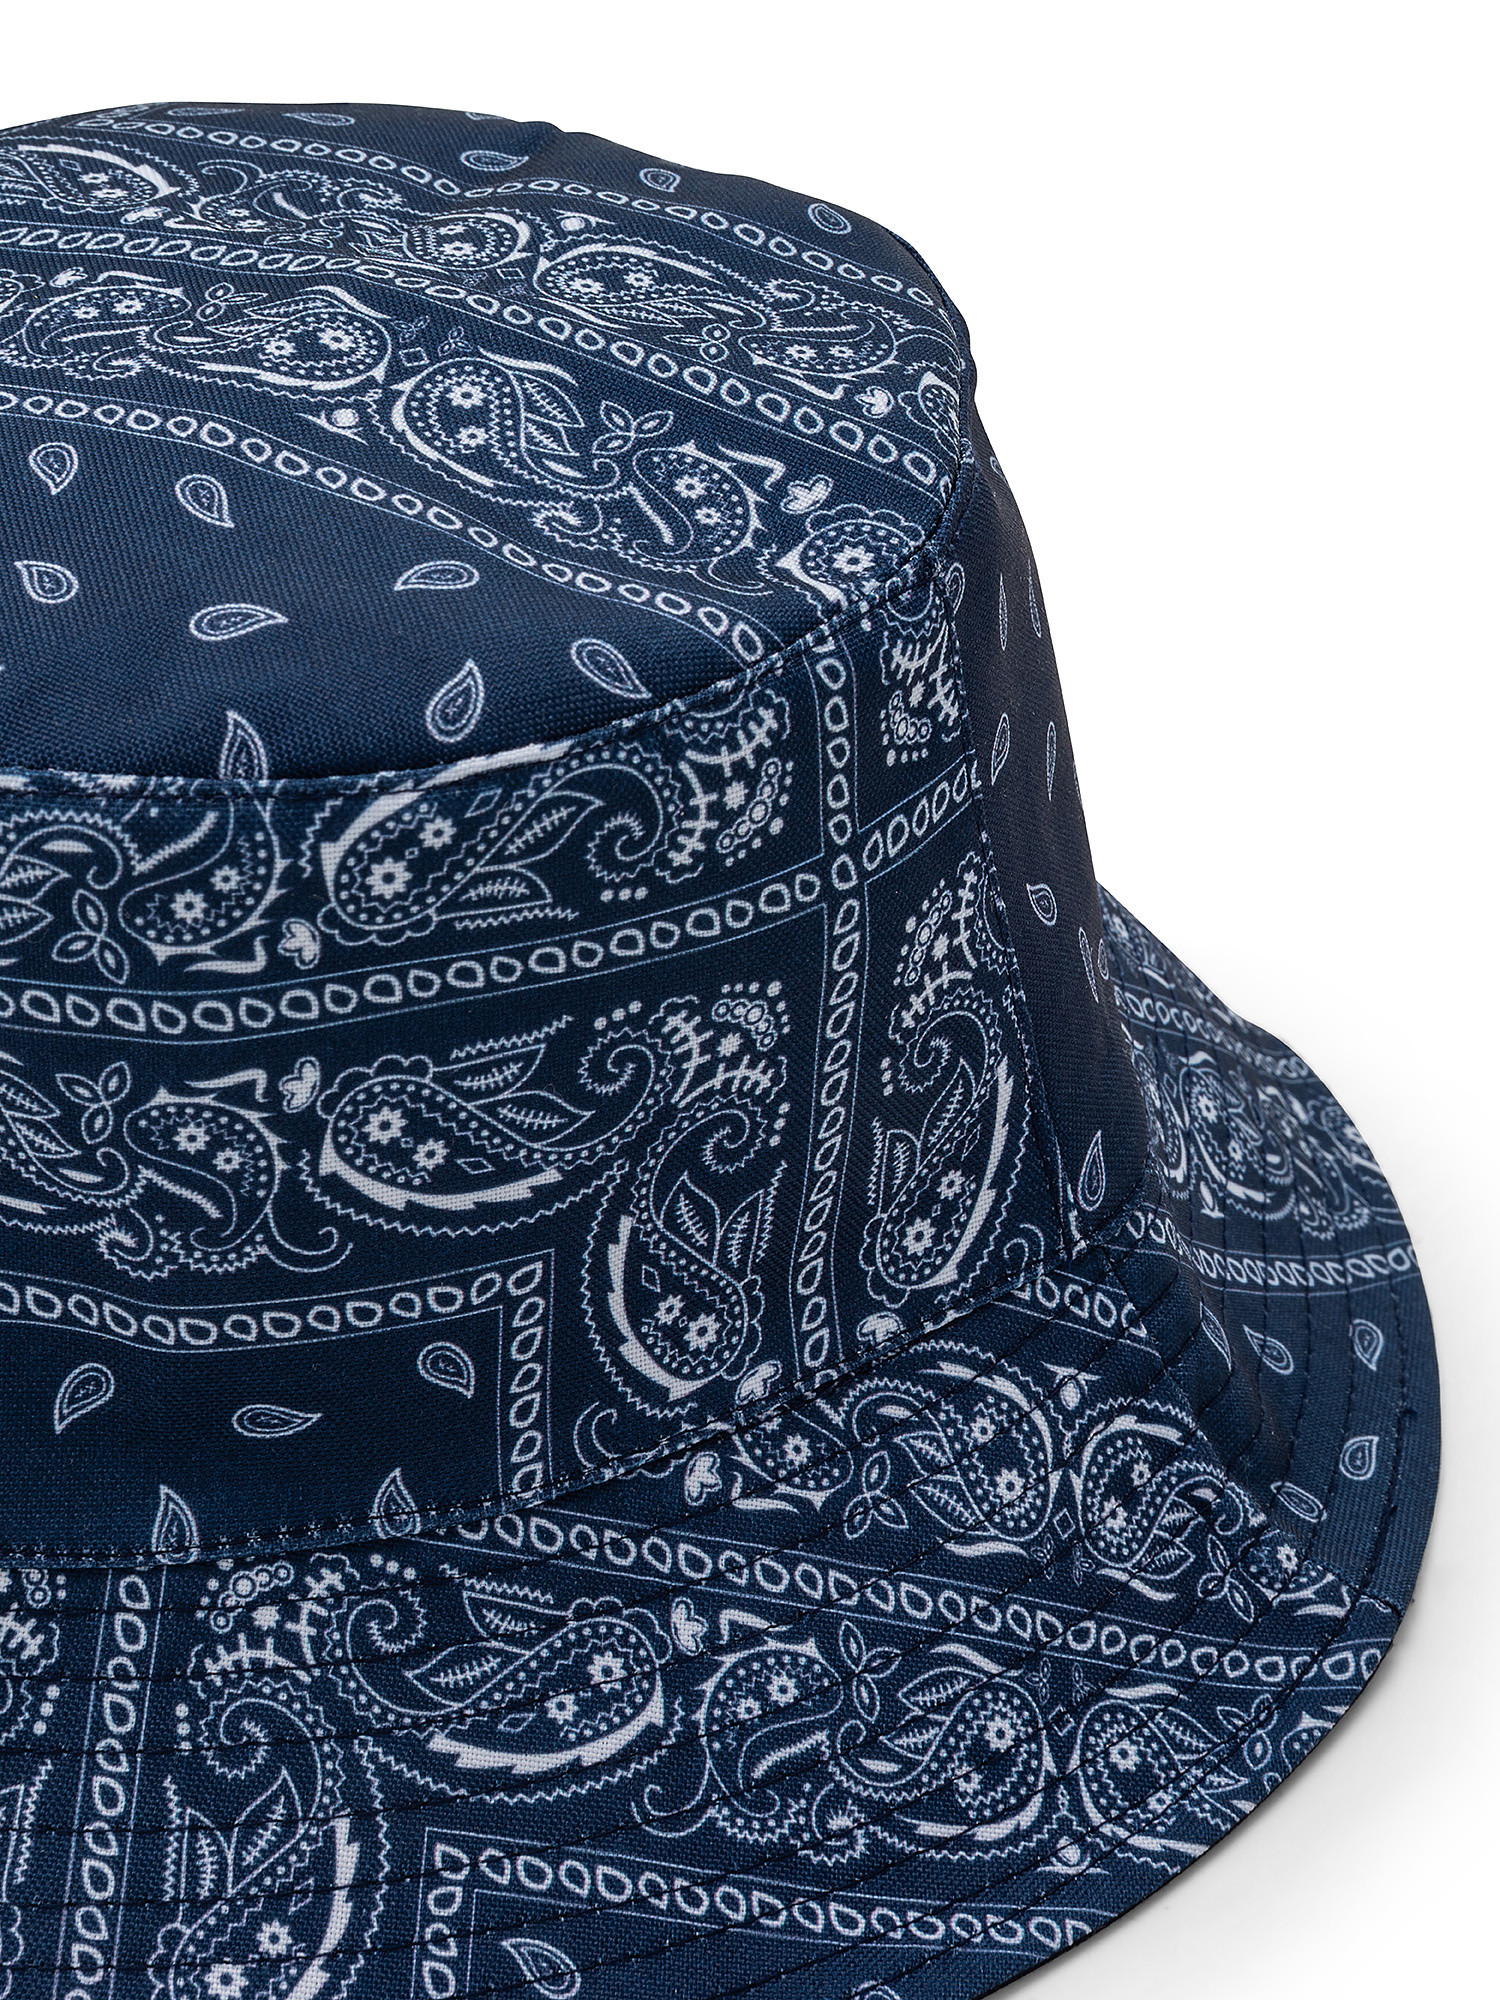 Cappello cloche stampa bandana, Blu, large